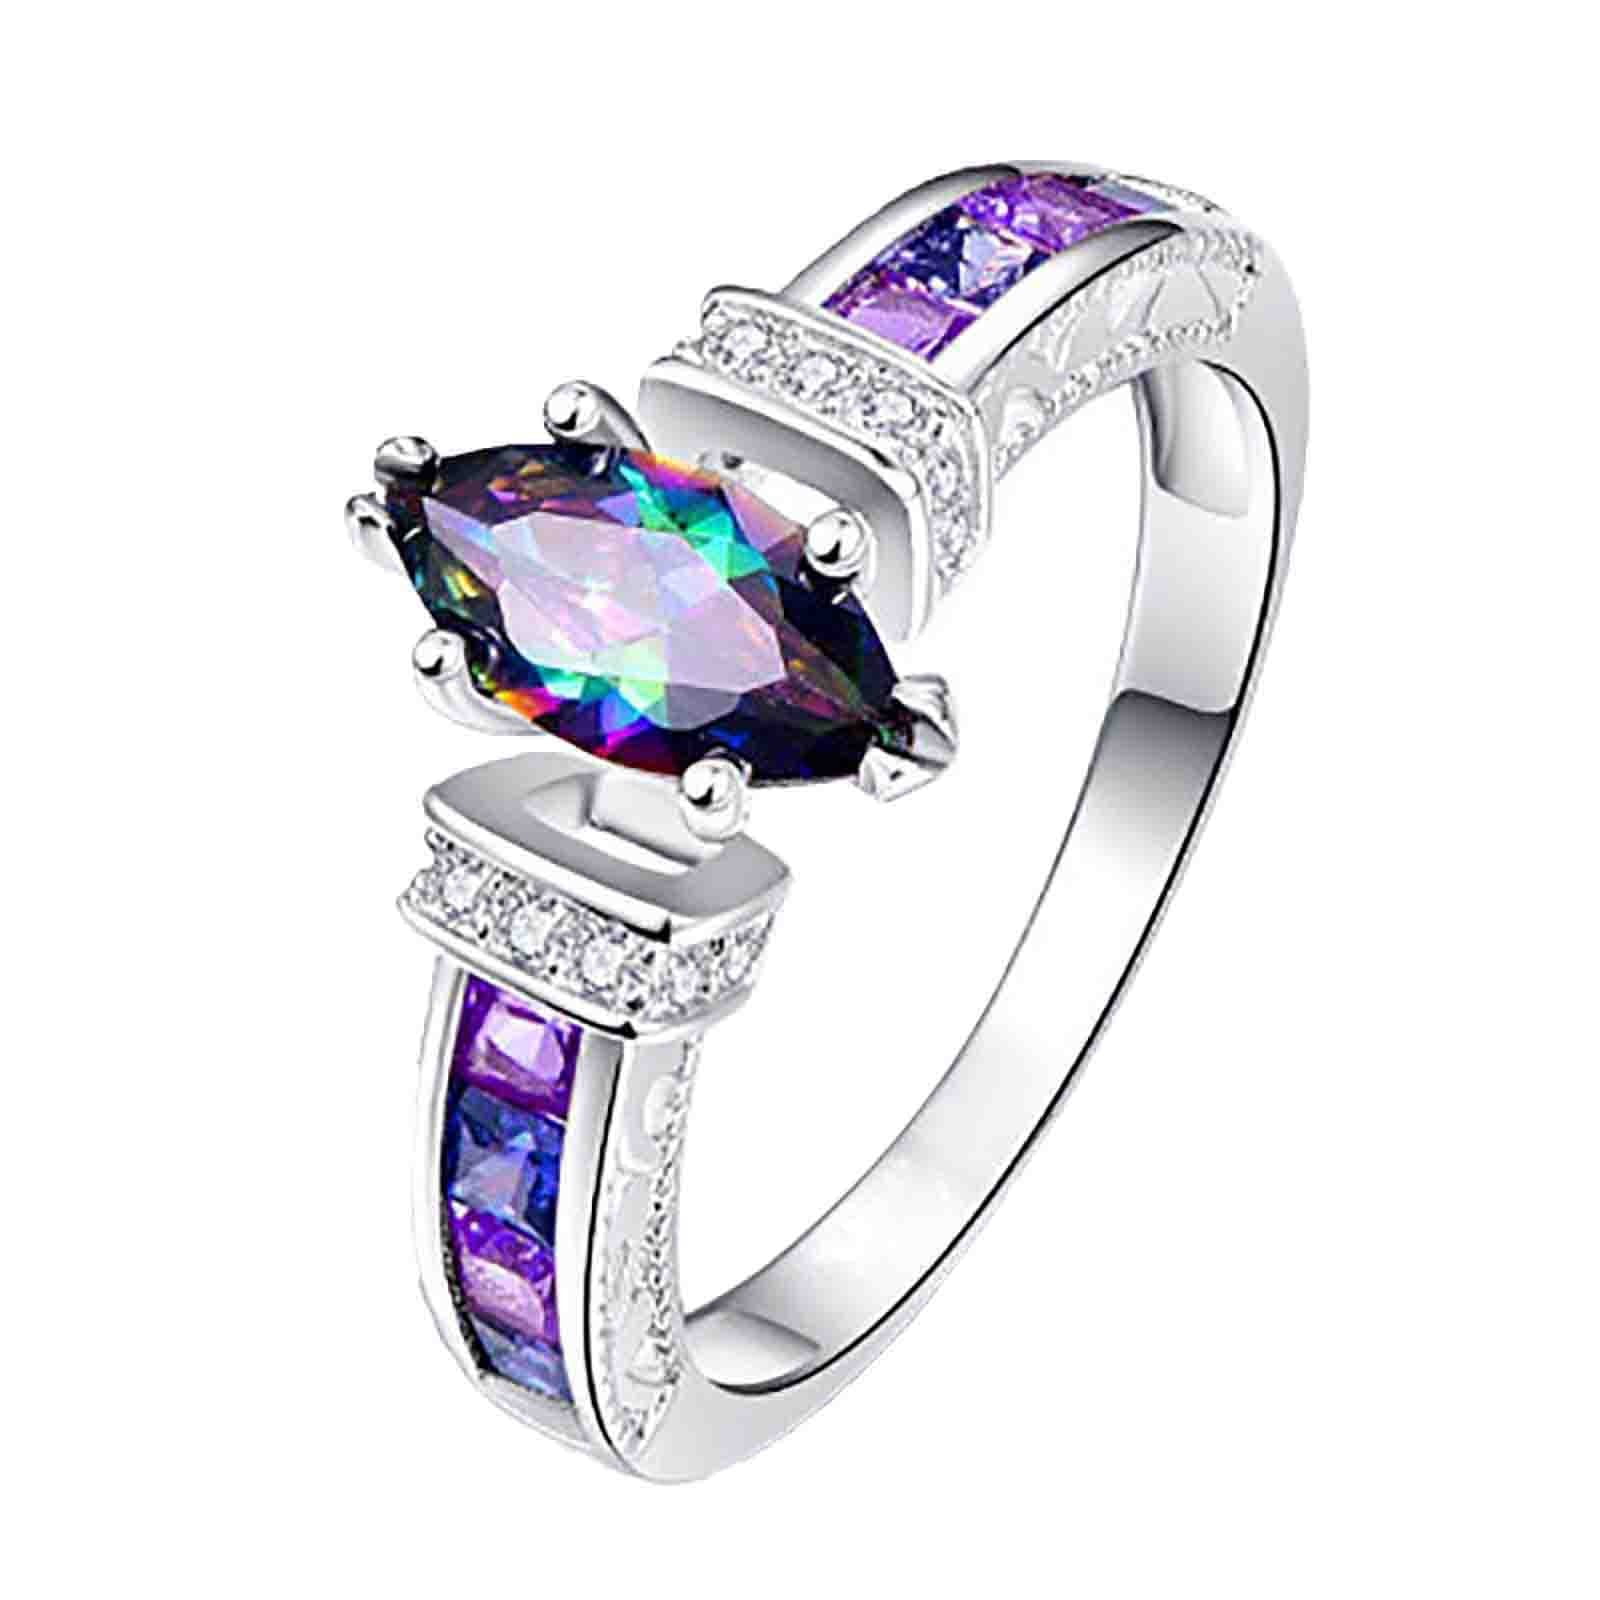 Princess Kylie 925 Sterling Silver Vine Filigree Design Ring 